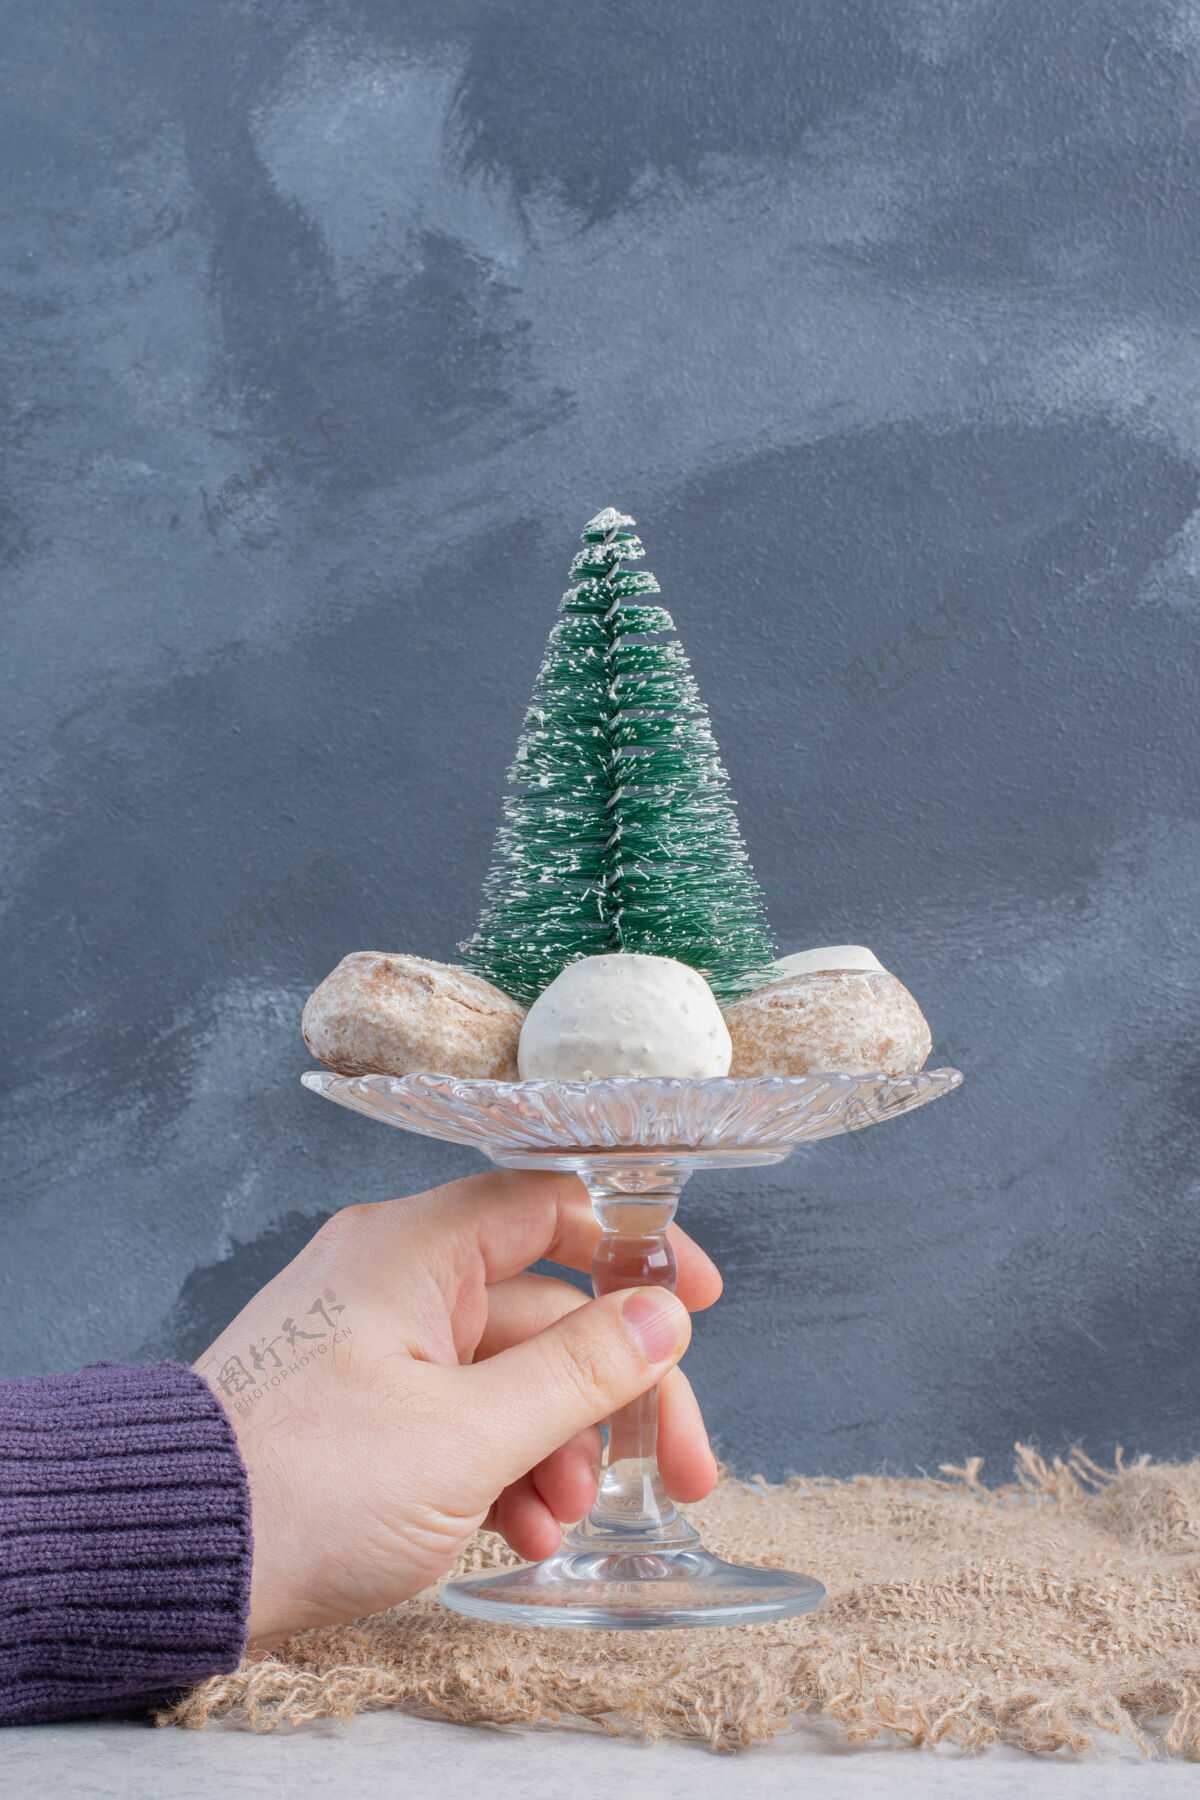 糖饼干围绕着一个树雕像在一个小基座上 由一只手在大理石表面举行甜小吃可口